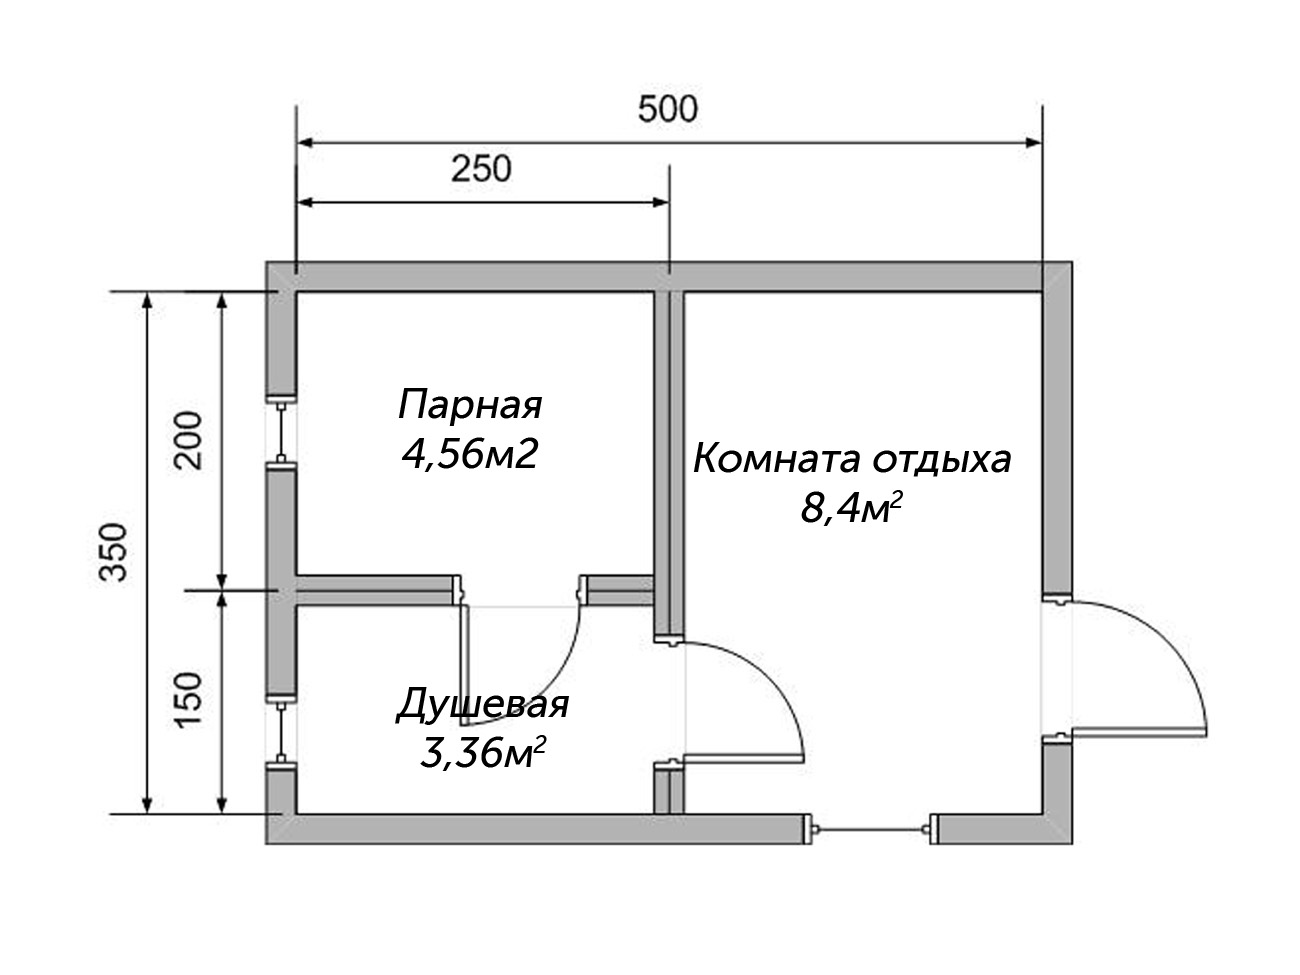 Планировка бани 3 на 6 (32 фото): оформление конструкции размером 3х6 внутри, план постройки в два этажа метражом 6х3, мойка и парилка отдельно